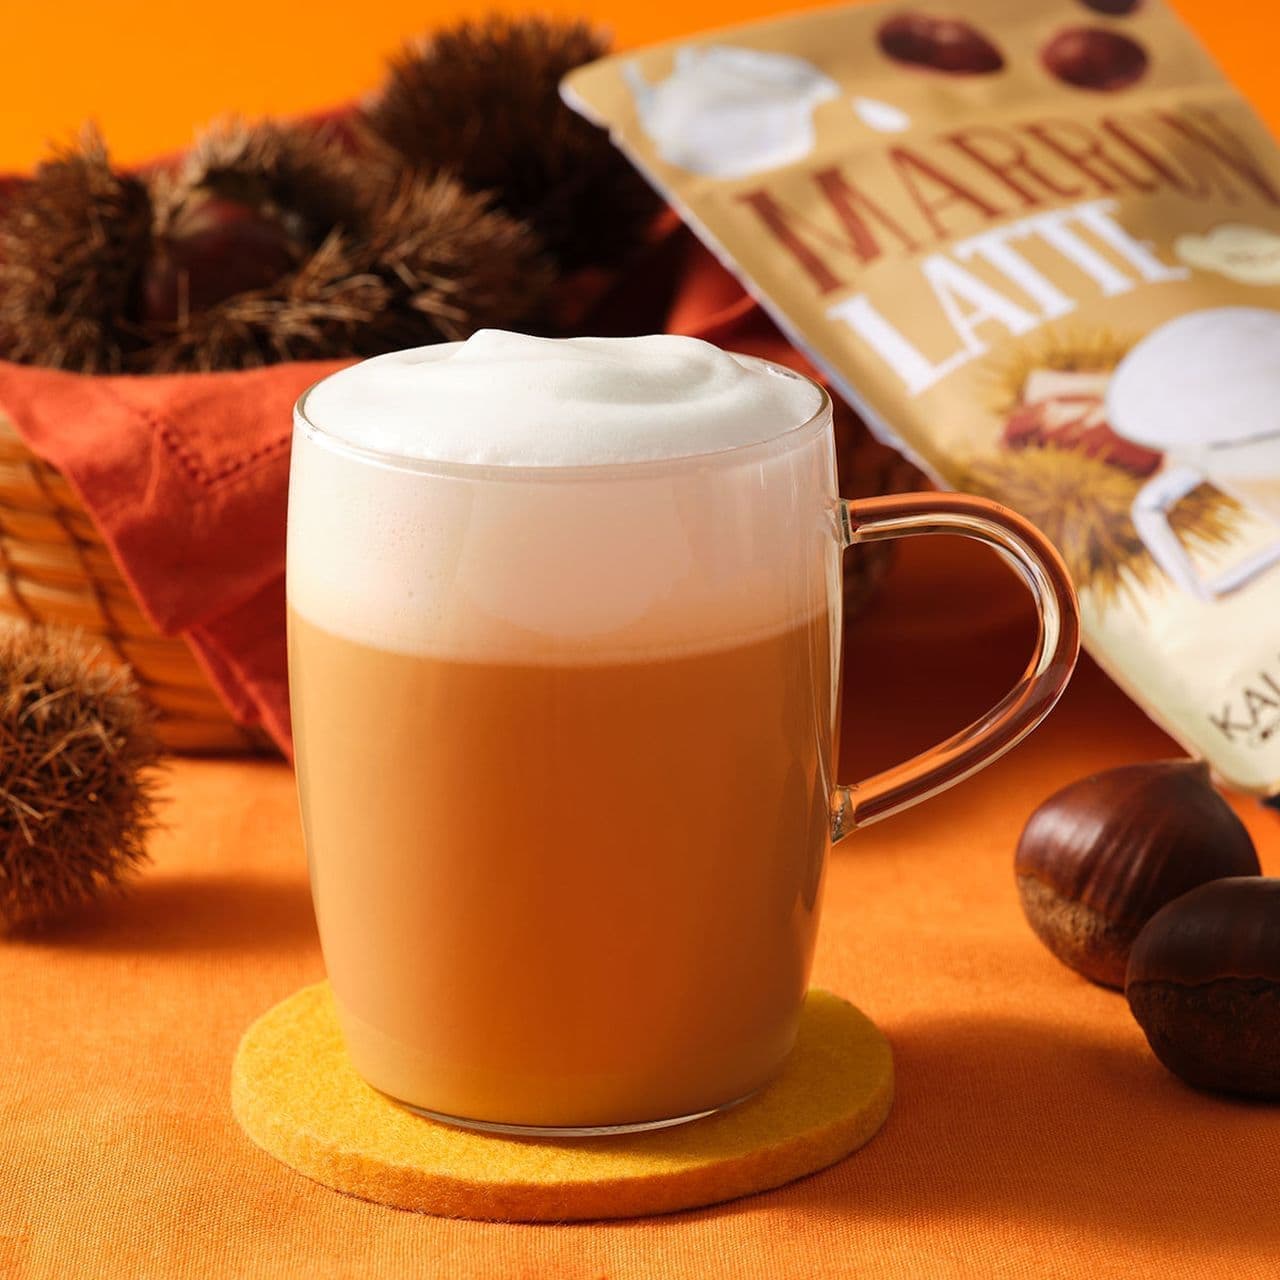 KALDI Coffee Farm "Original Instant Marron Latte